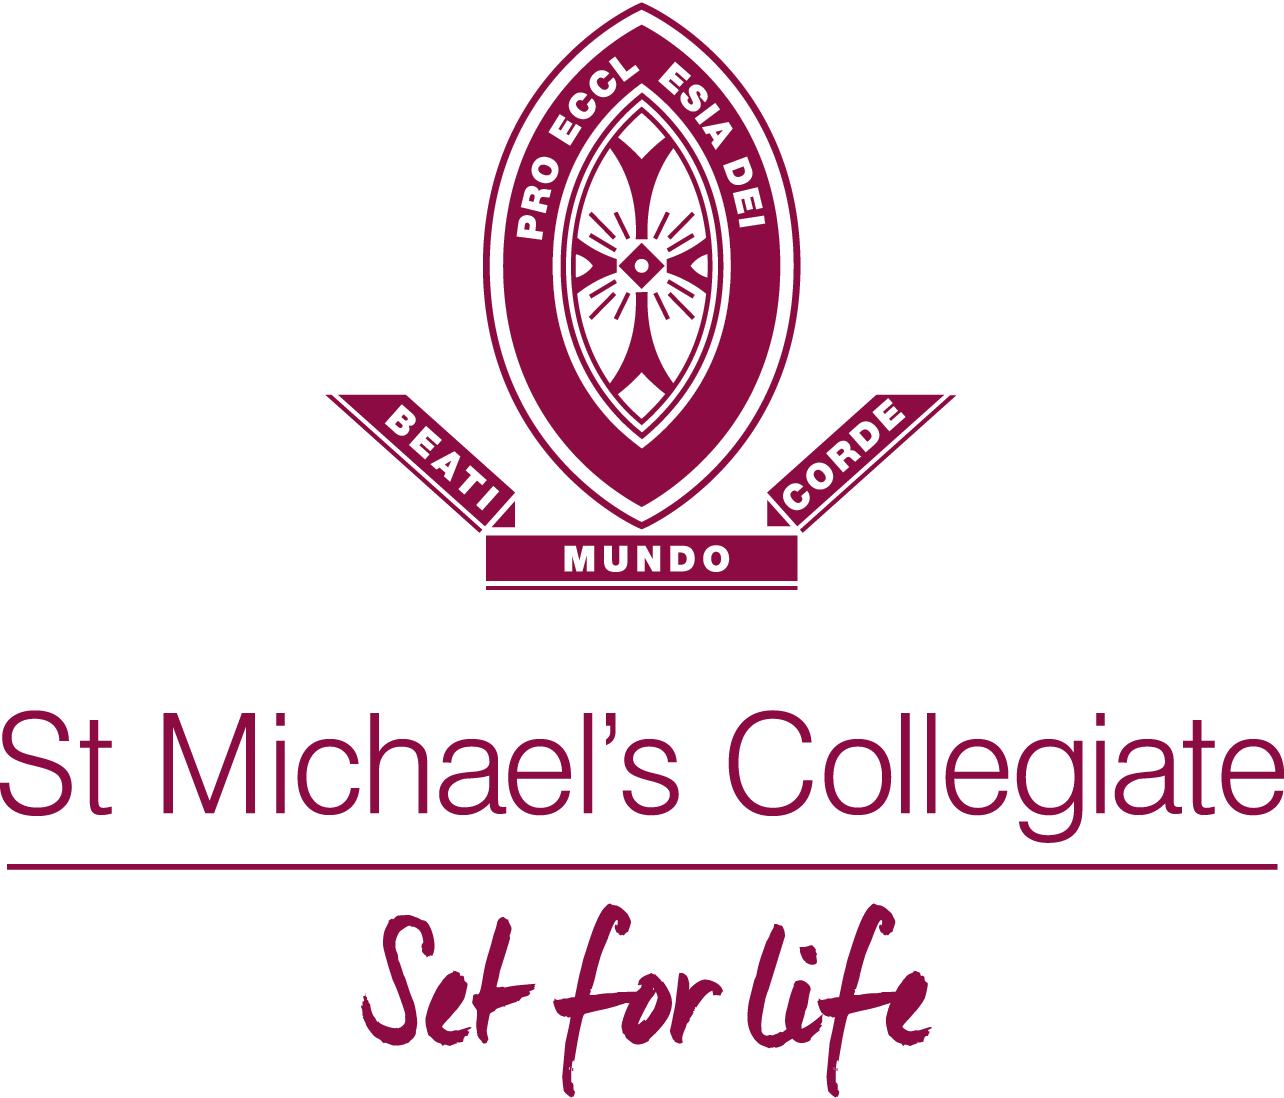 Collegiate Logo - SMC BURGUNDY Centered logo CMYK logo Michael's